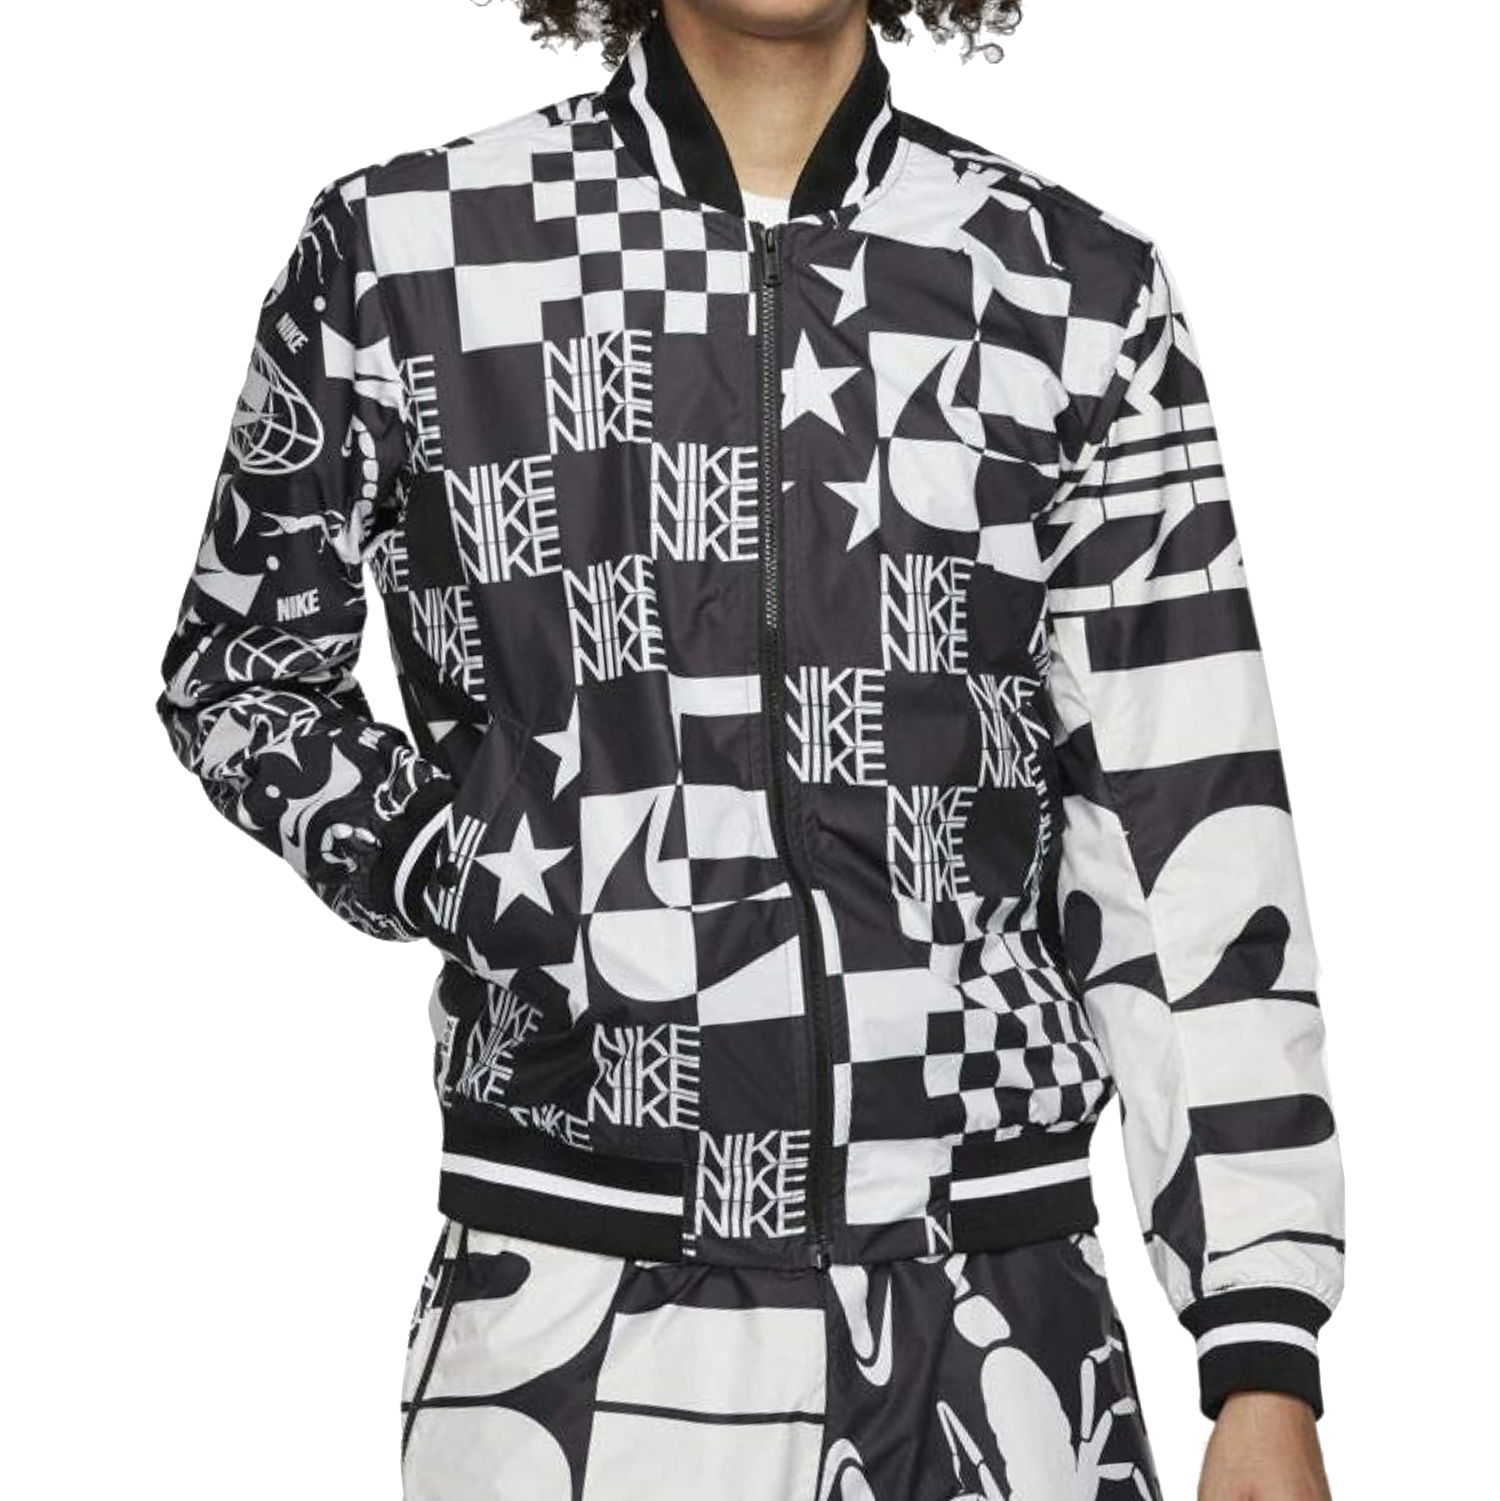 Nike Mens White/Black Bomber Jacket $160